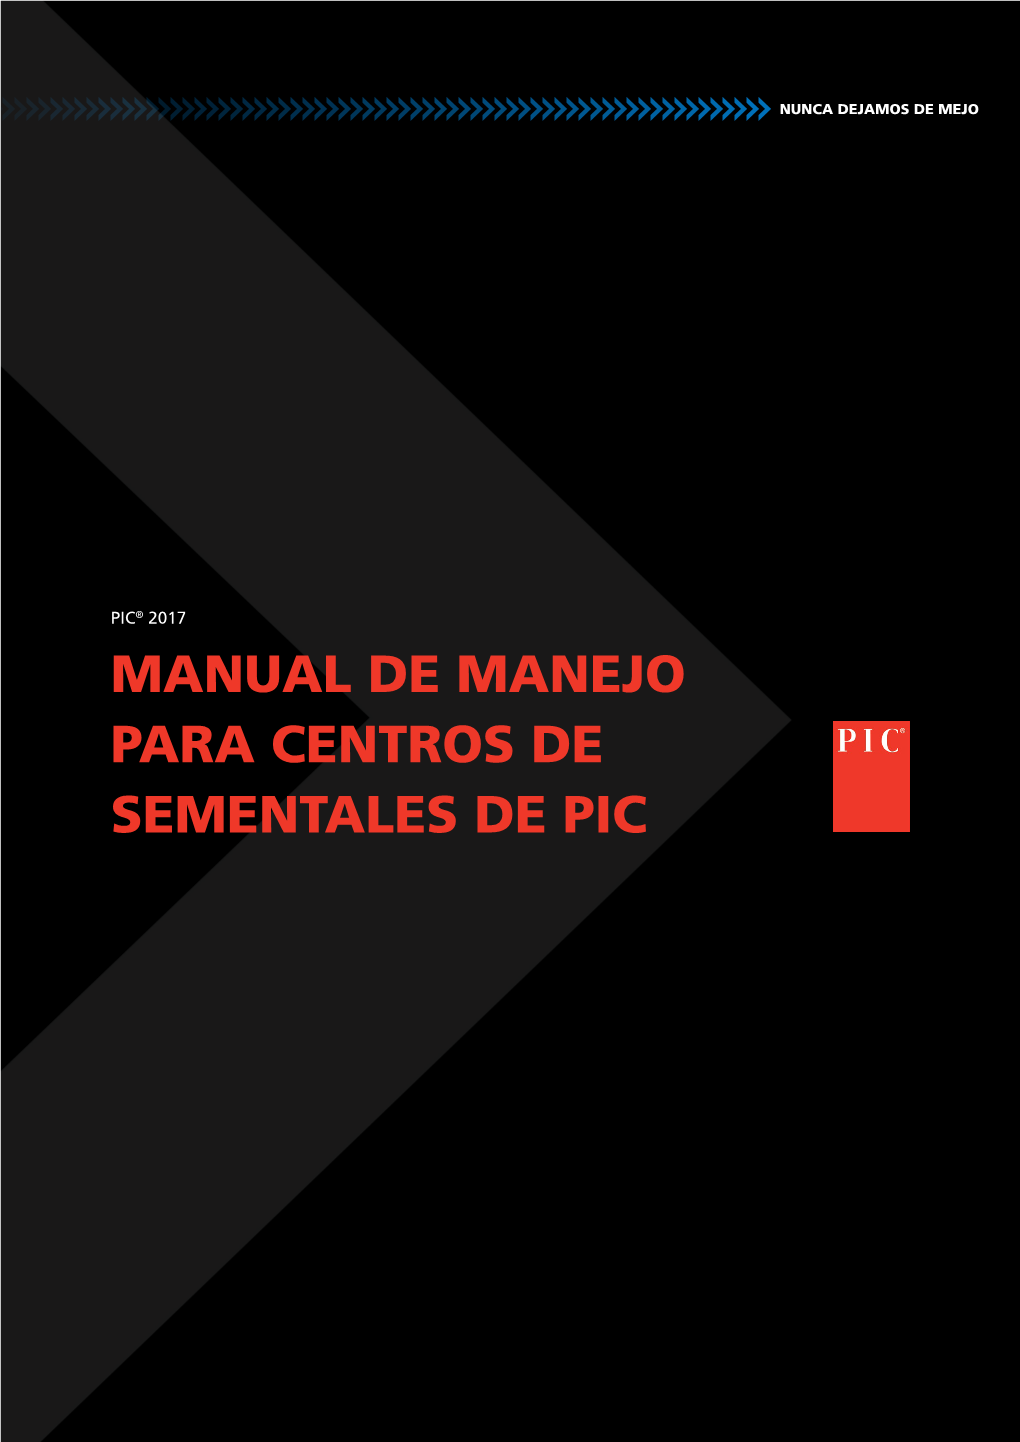 Manual De Manejo Para Centros De Sementales De Pic Bienvenido a La Edición 2017 Del Manual De Manejo Para Centros De Sementales De Pic